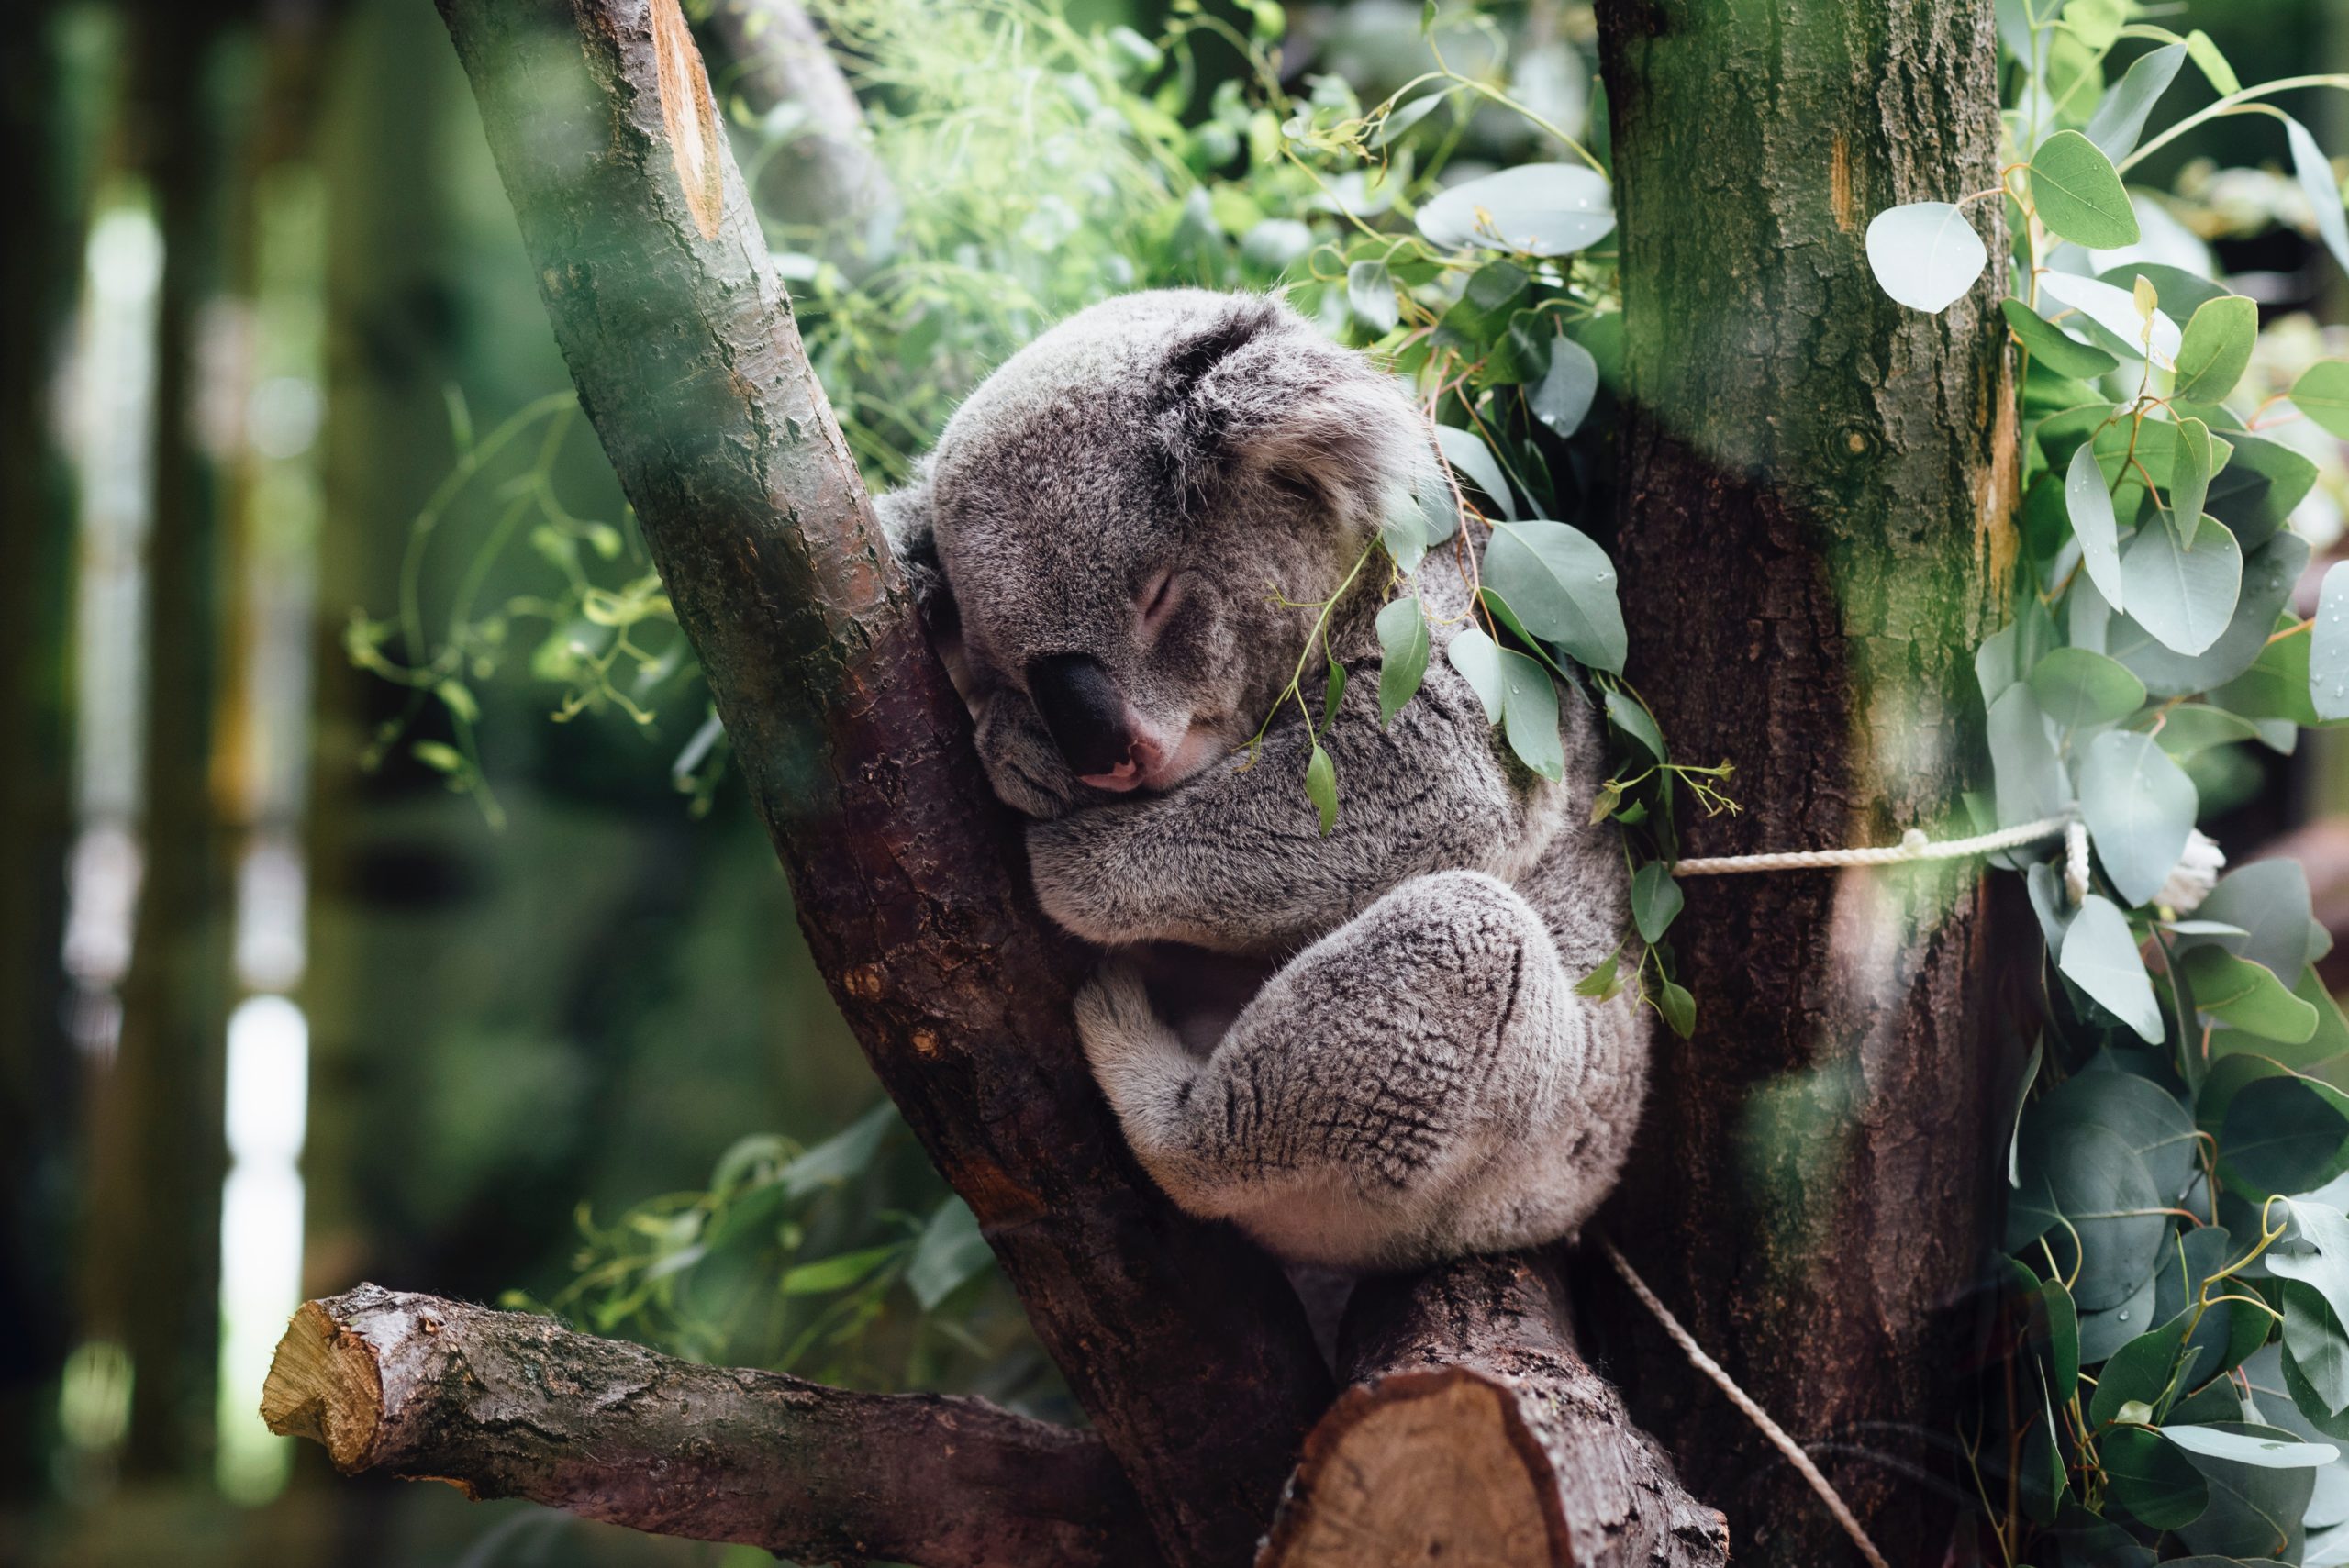 Koala sleeping on tree